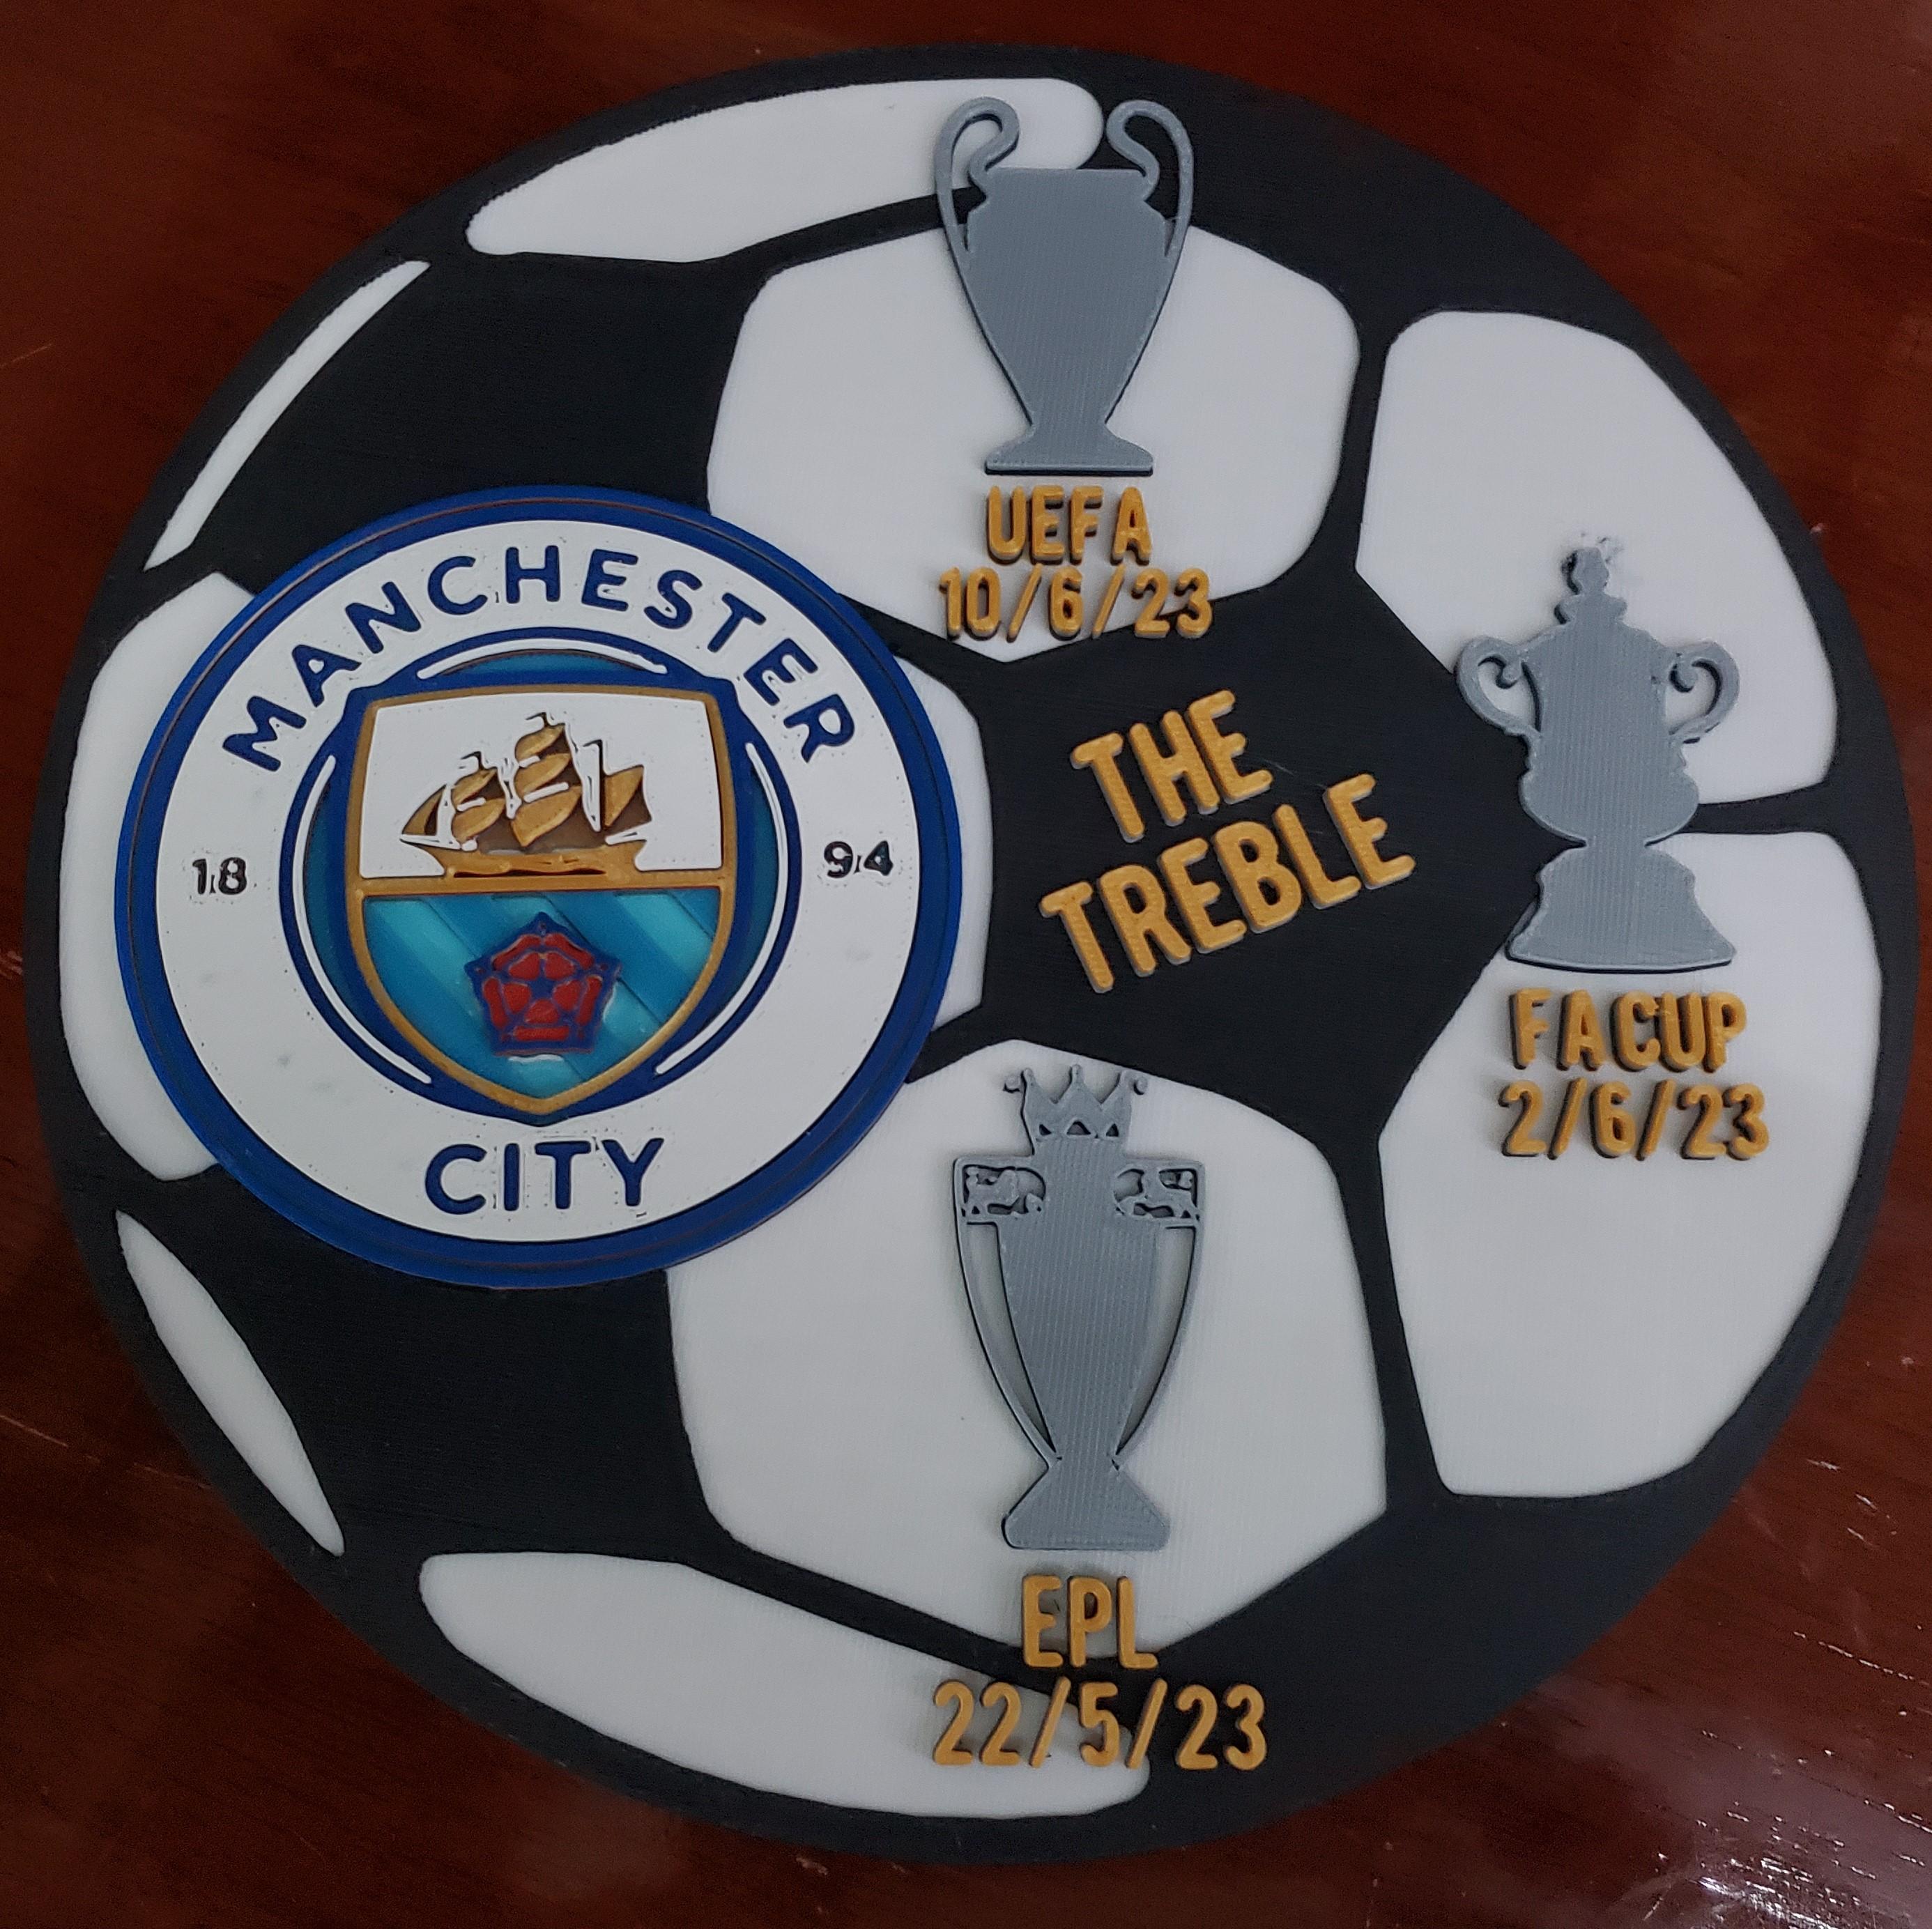 The Treble Plaque - Manchester City 3d model